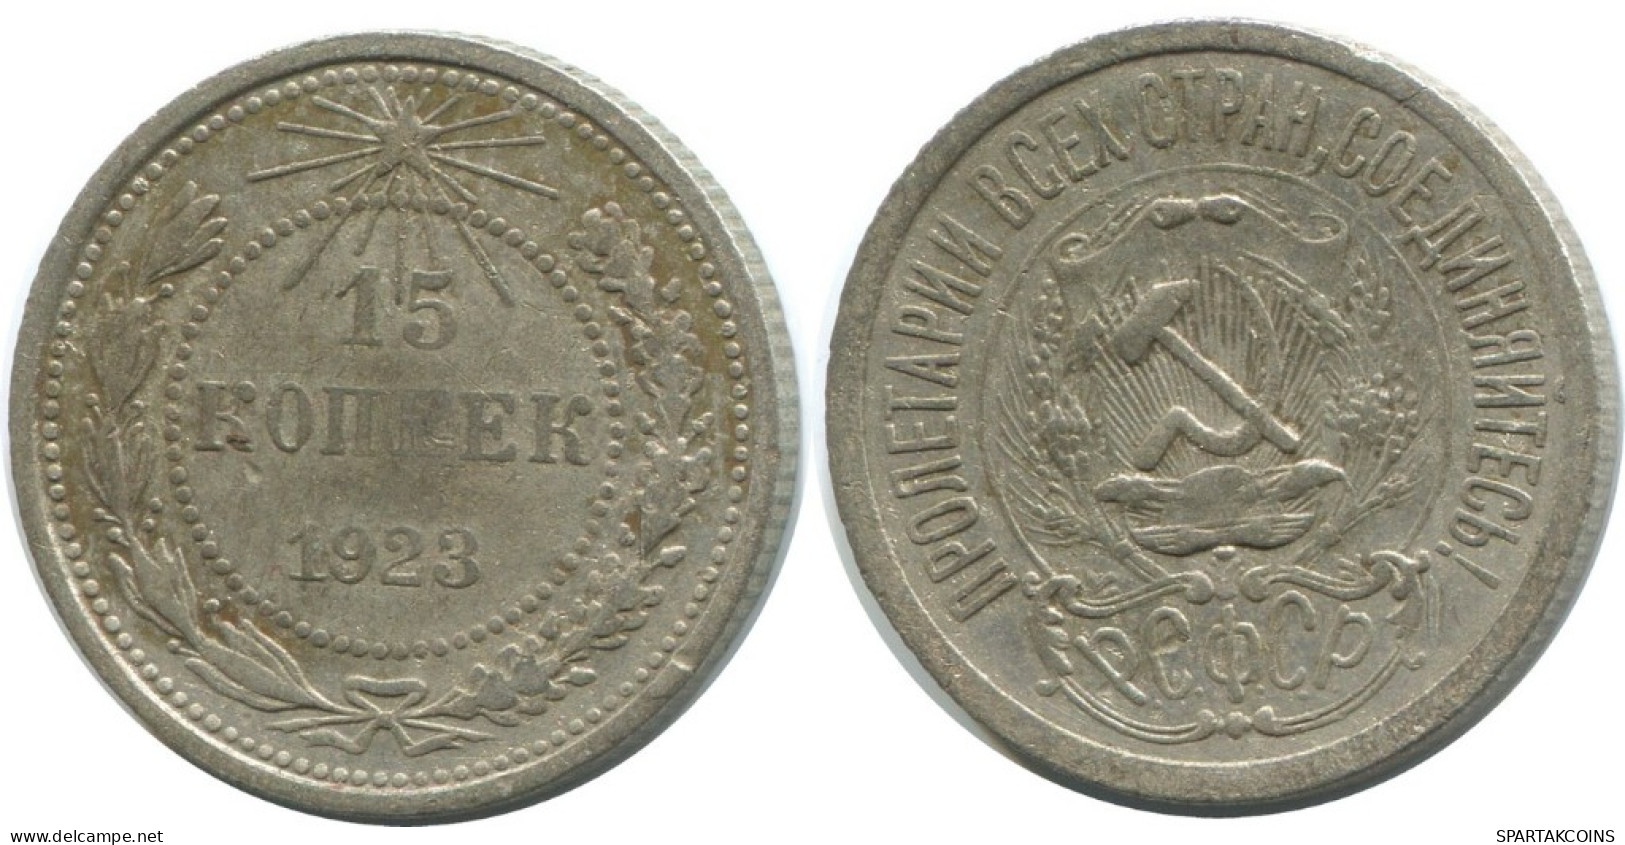 15 KOPEKS 1923 RUSSIA RSFSR SILVER Coin HIGH GRADE #AF098.4.U.A - Rusland